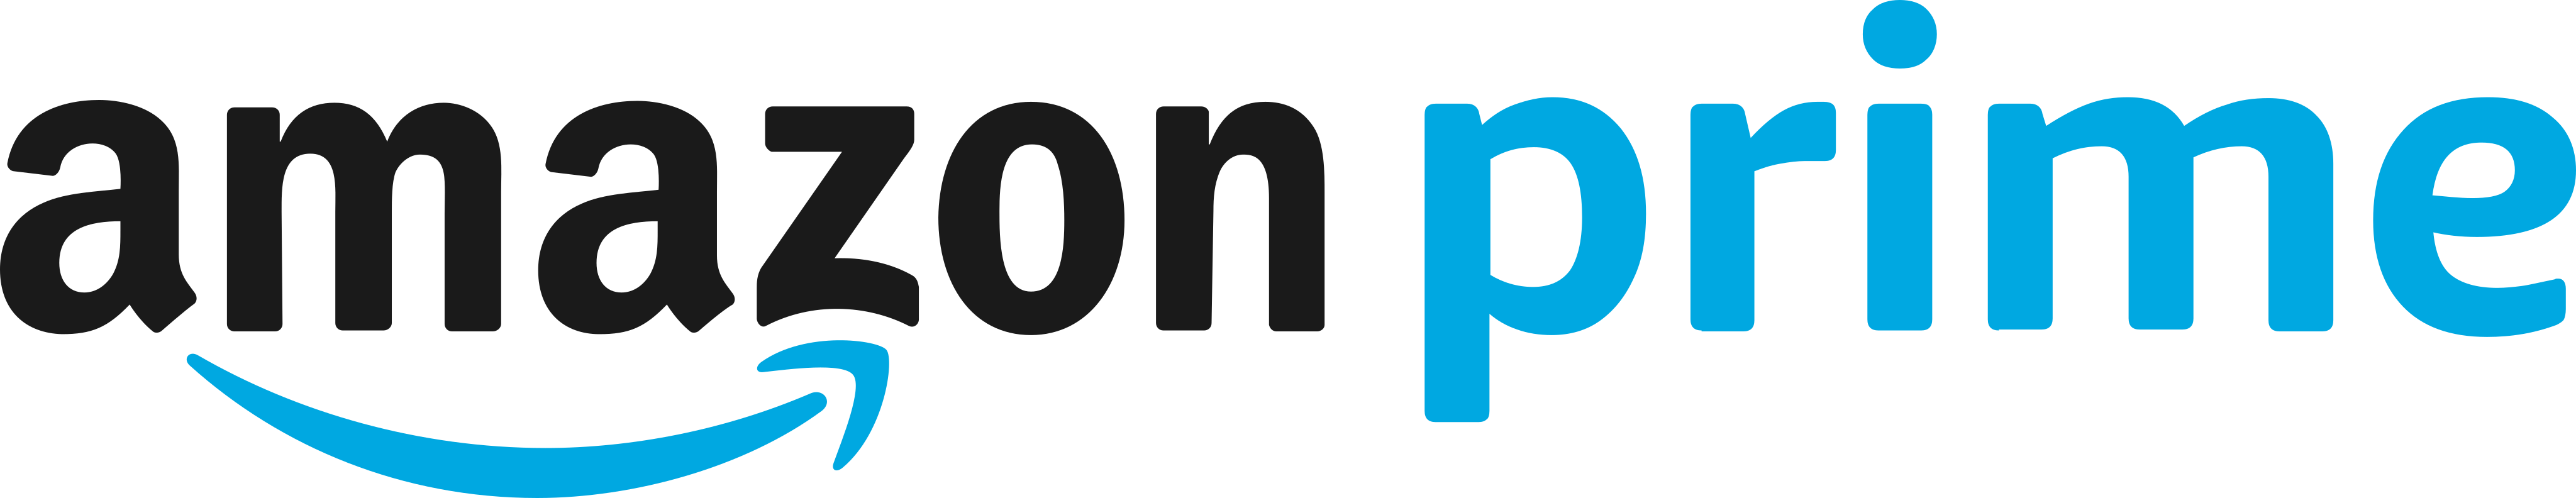 Amazon Prime Logo.